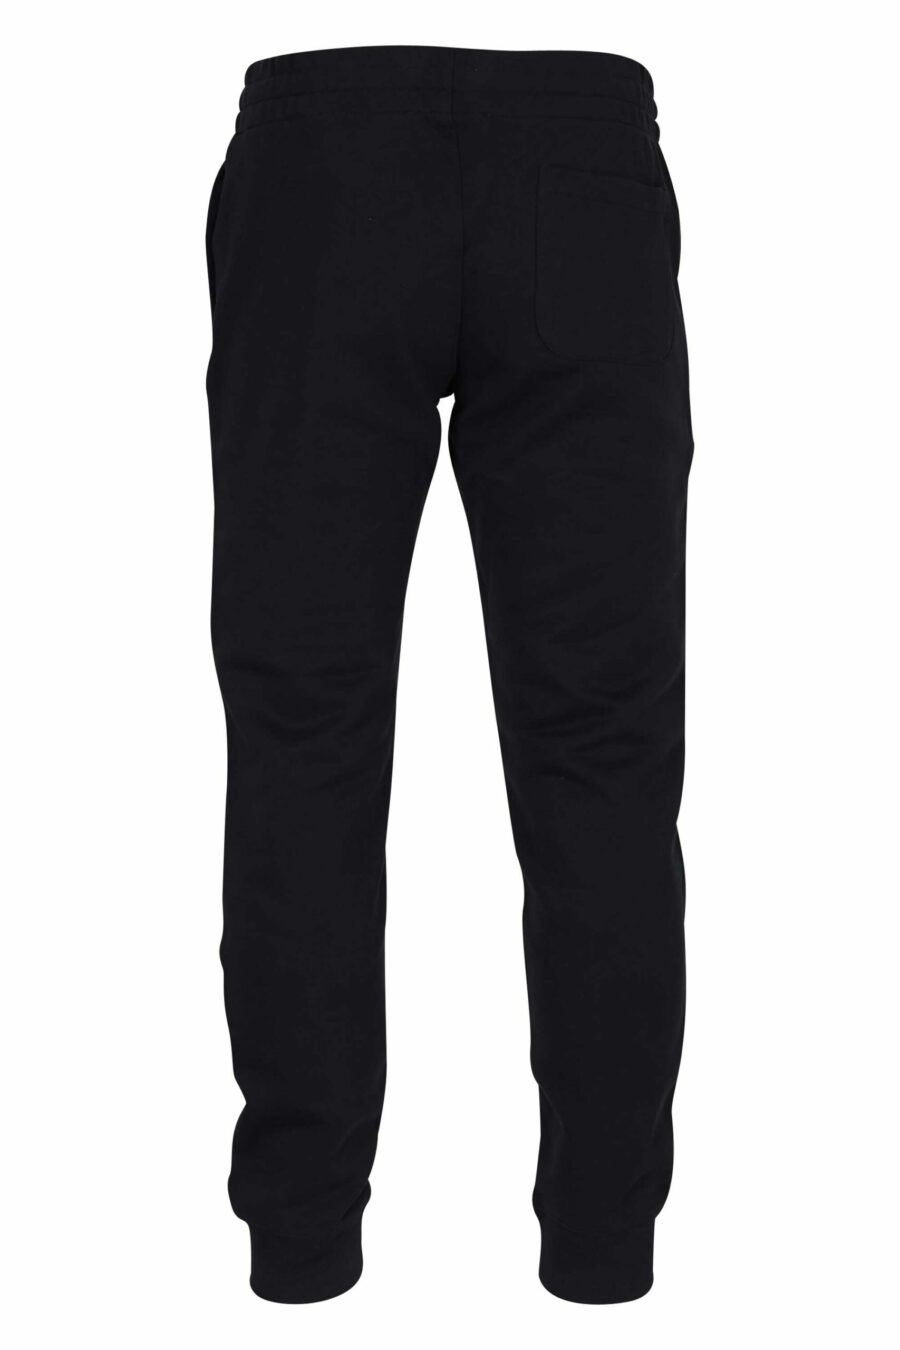 Pantalón de chándal negro de algodón orgánico y logo "splash" multicolor - 667113349237 2 scaled